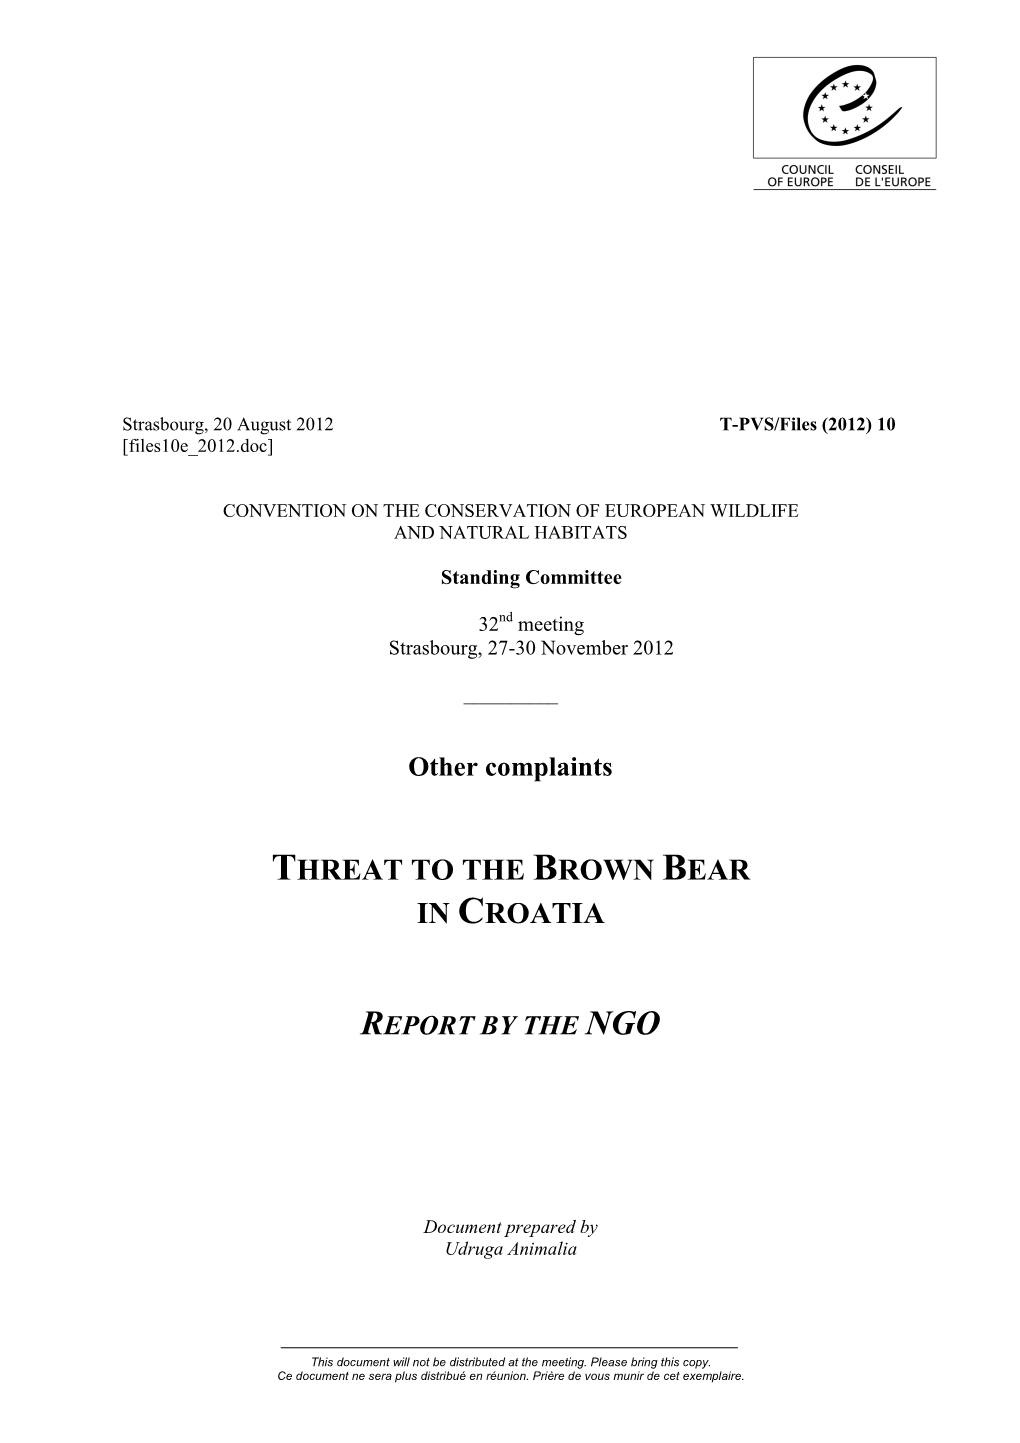 Files10e 2012 Brown Bear in Croatia